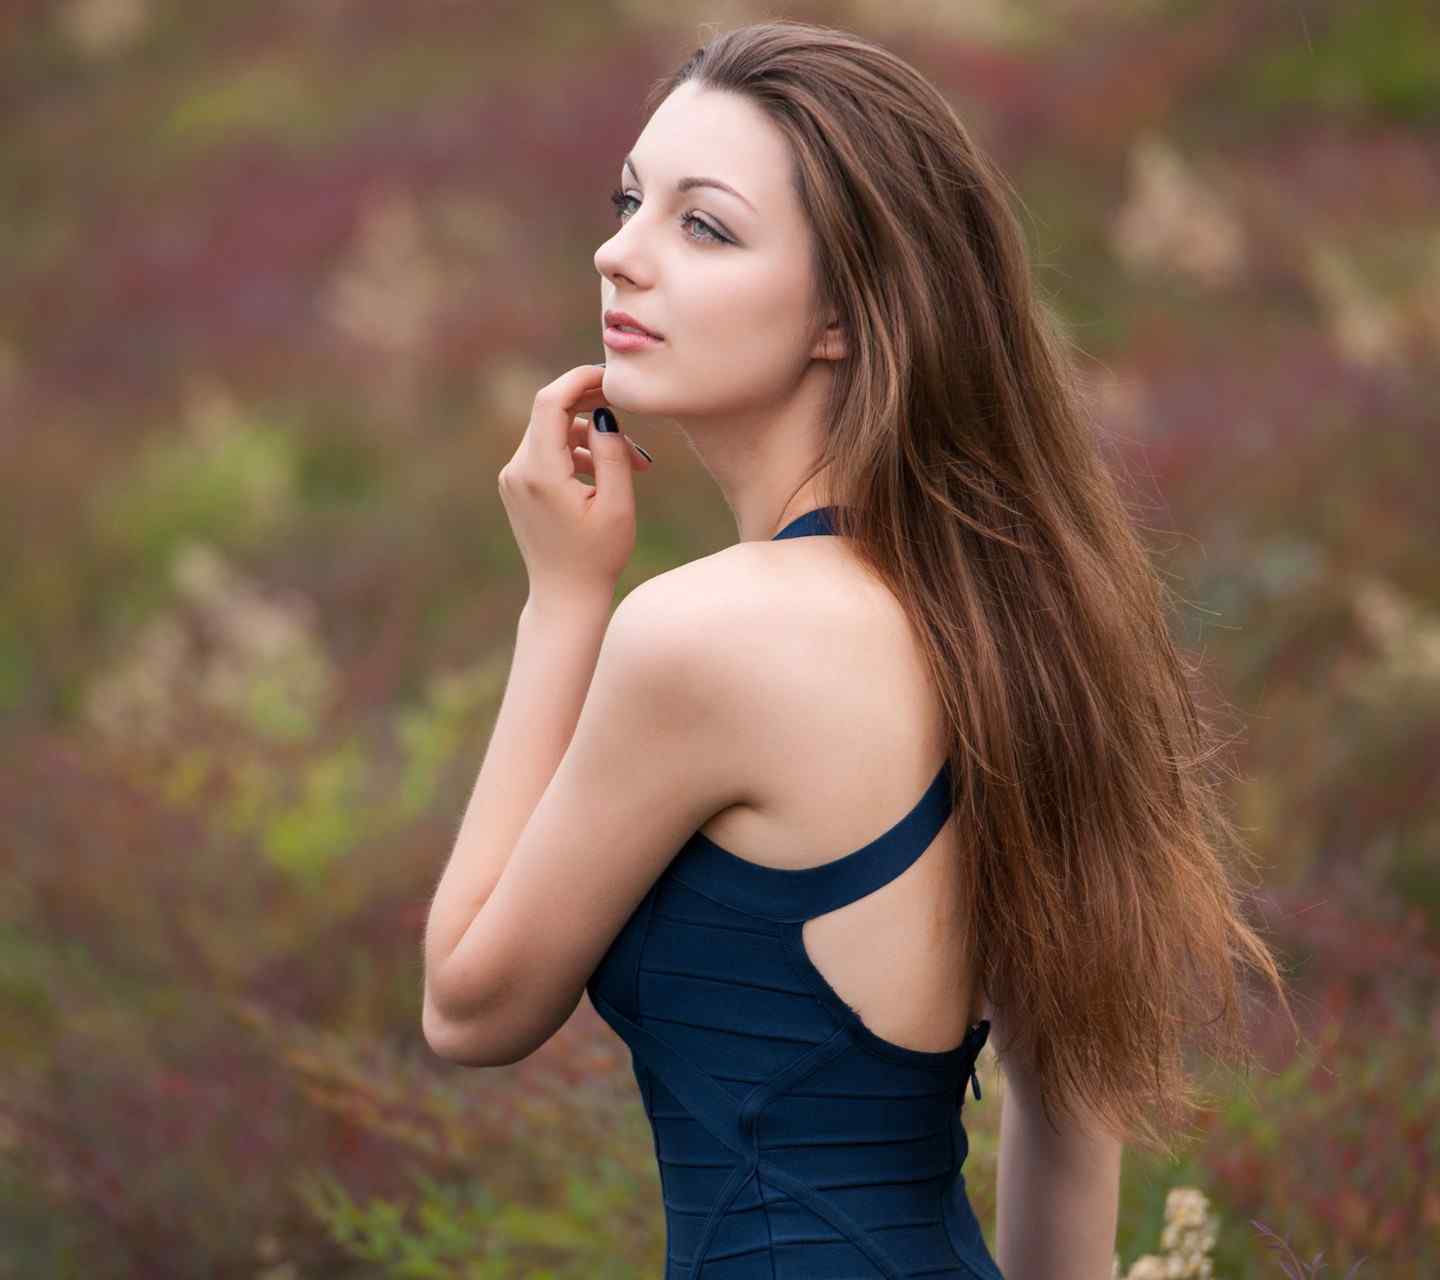 俄罗斯模特 Dasha Taran 照片合集 西方美女欣赏 - 哔哩哔哩